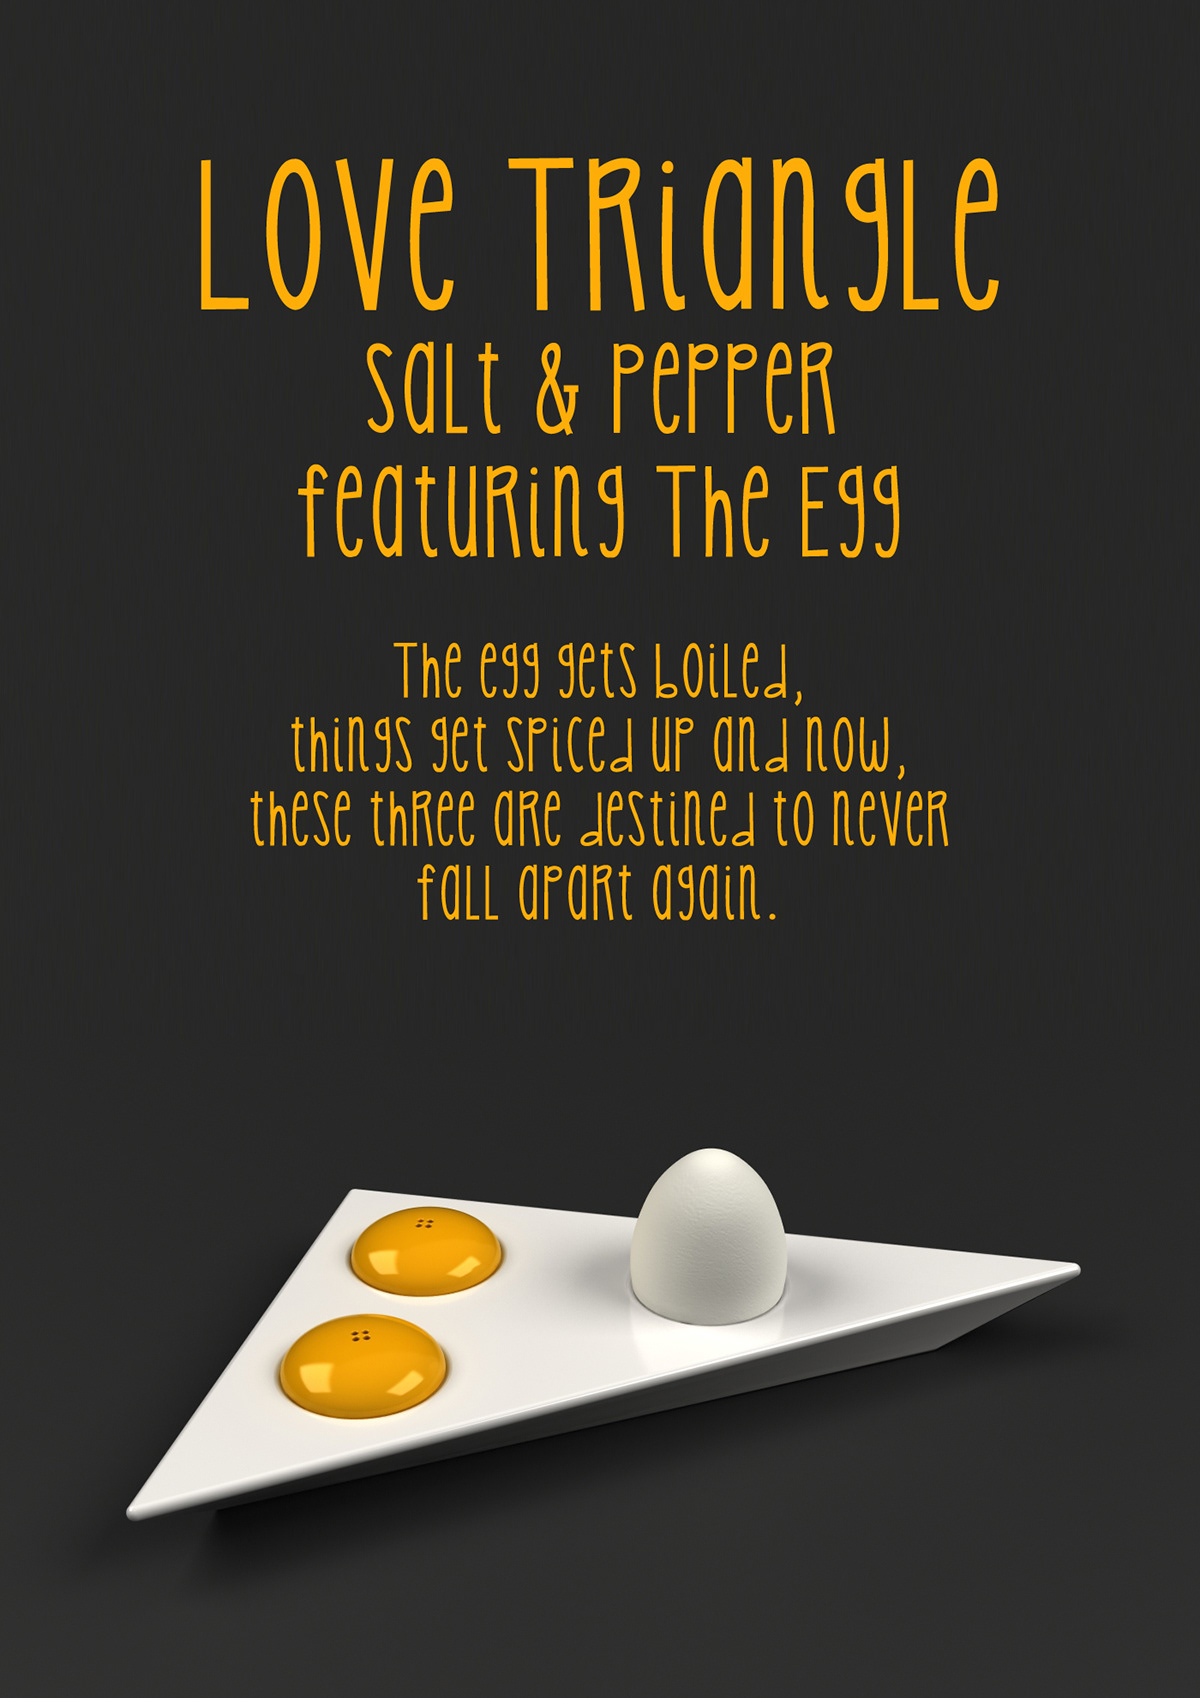 White  yellow  egg Salt  pepper egg holder porcelain  ceramic Love  triangle  breakfast  kitchen tableware